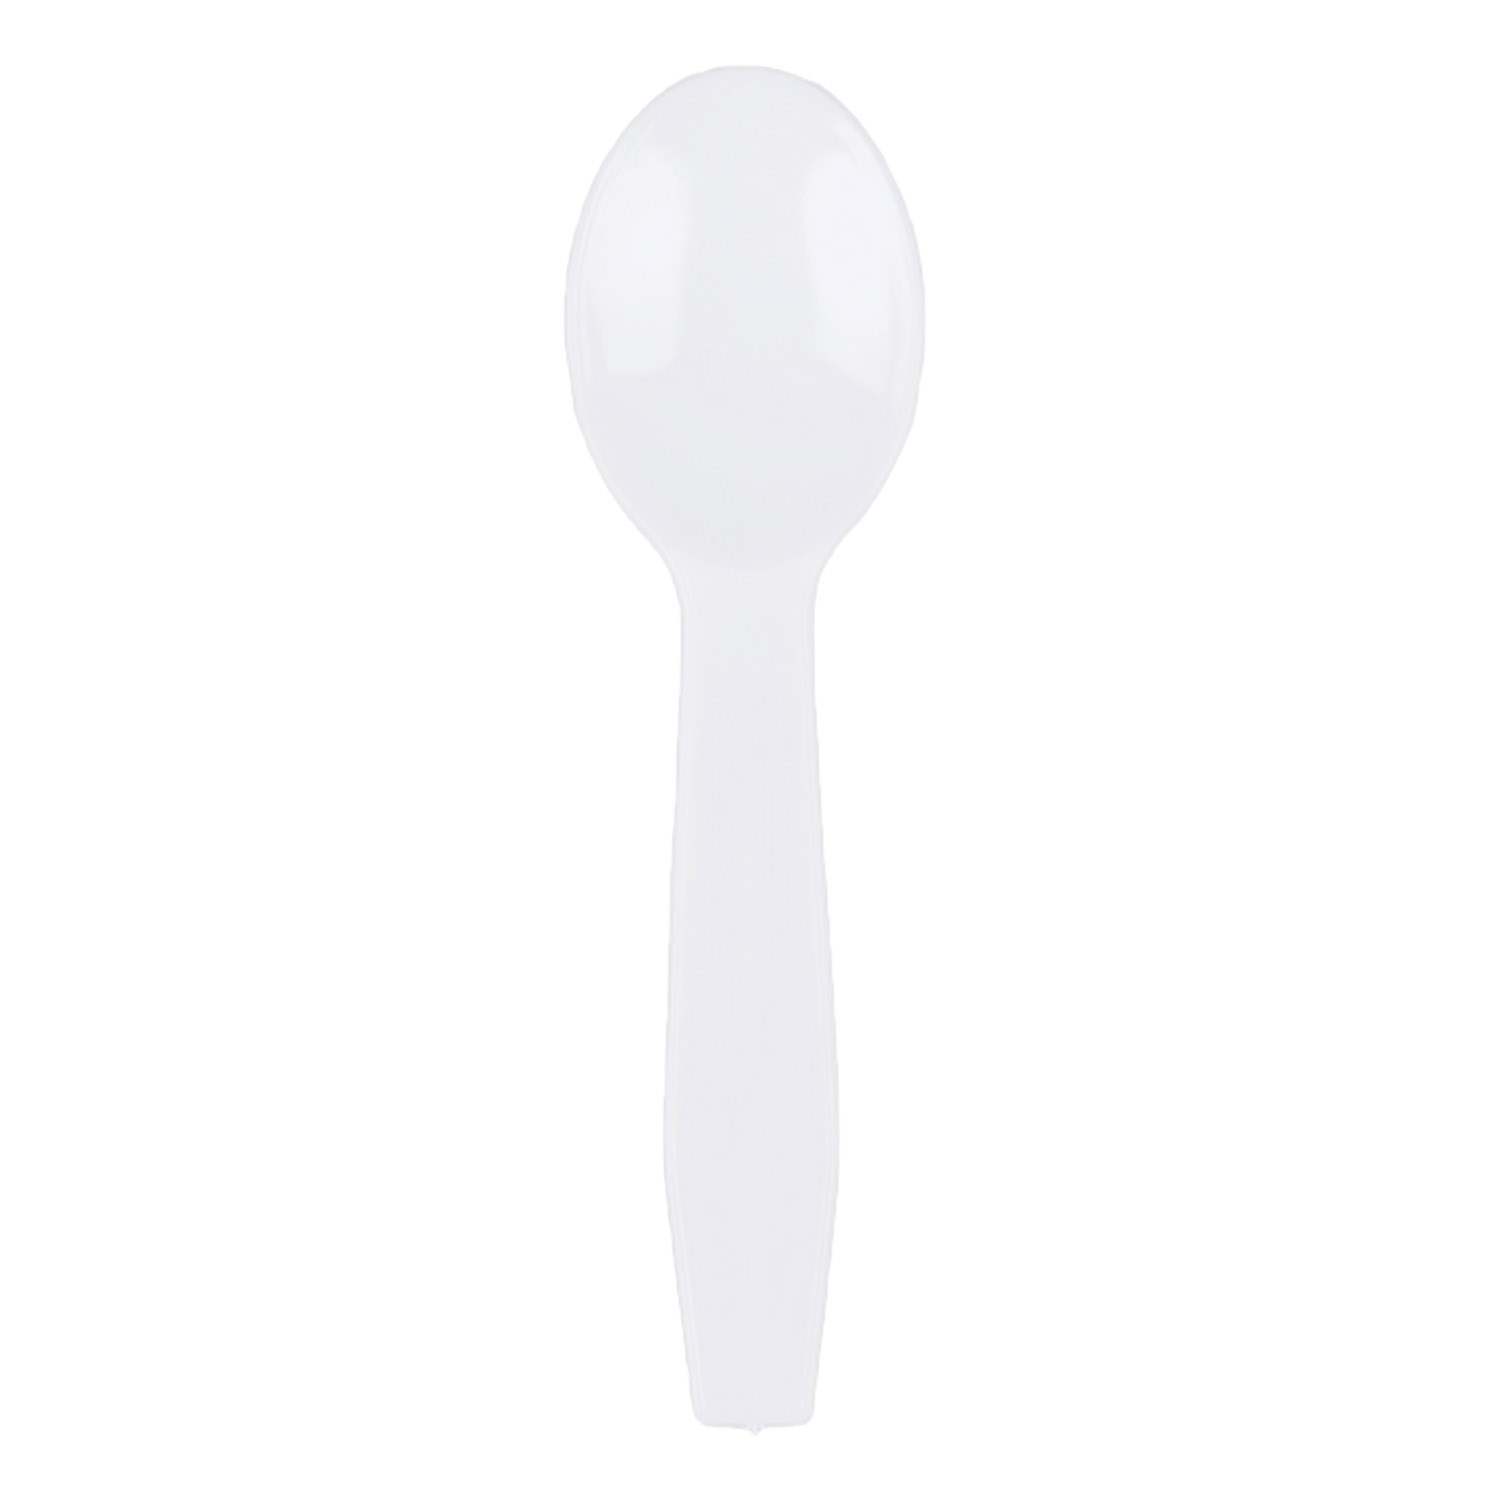 White Taster Spoons